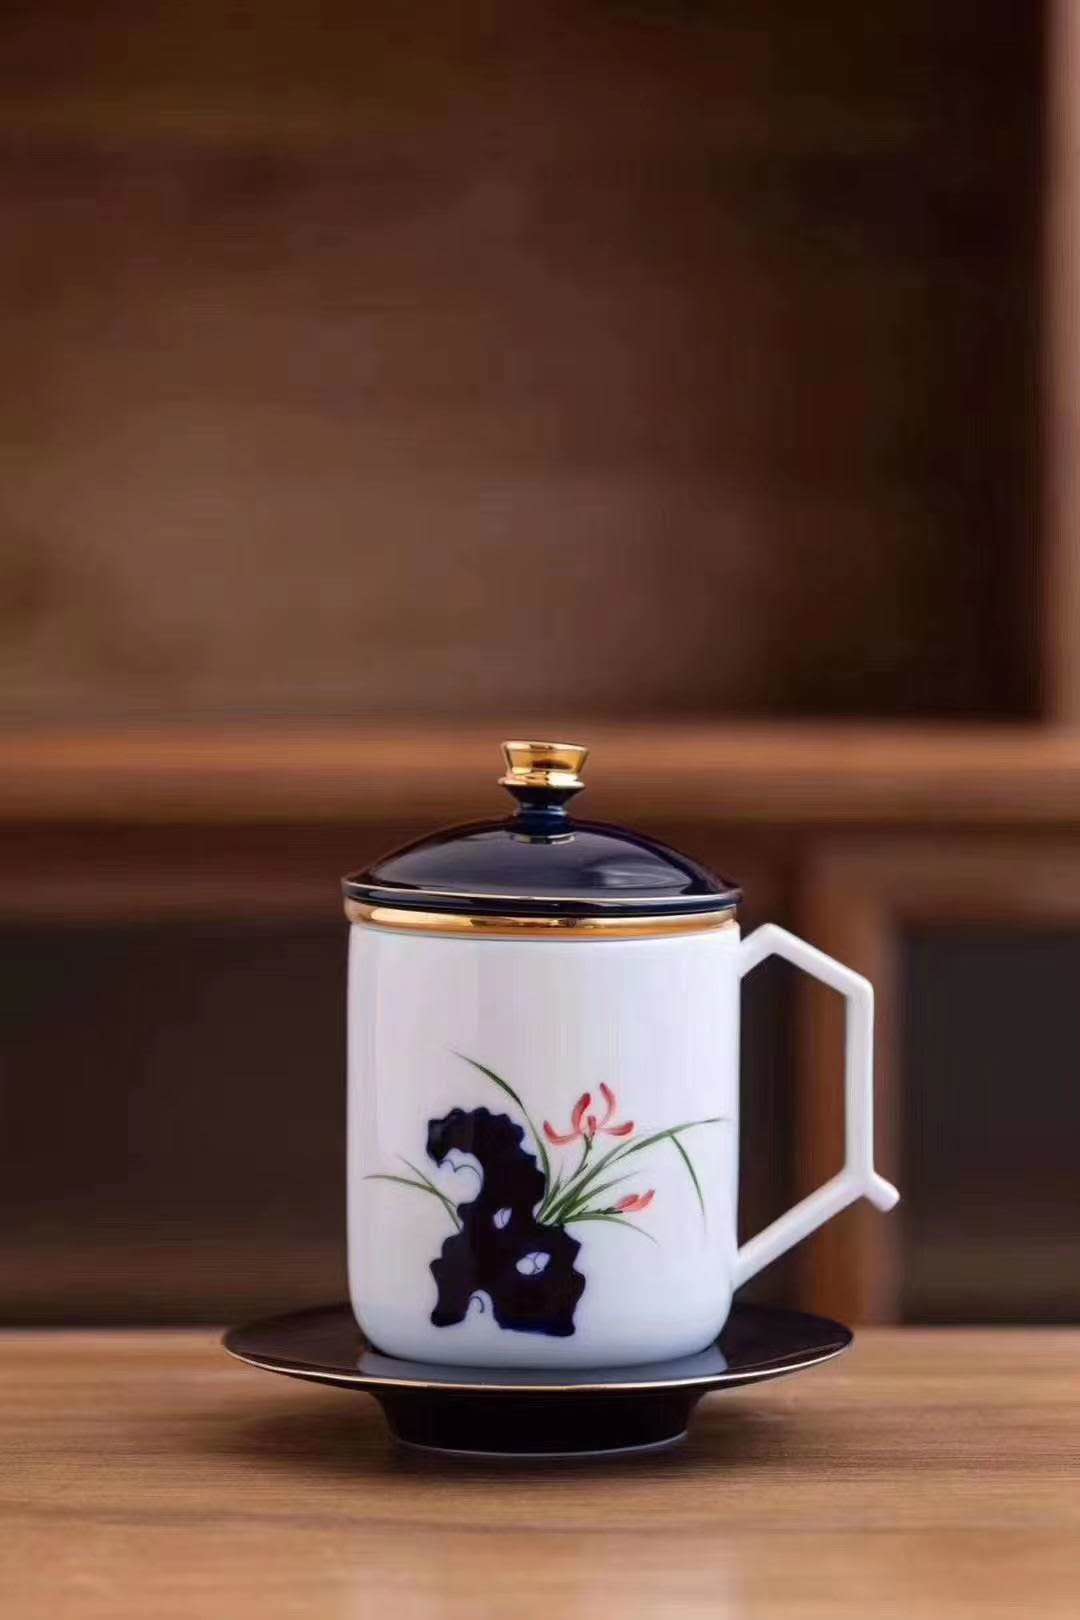 中秋送礼定制陶瓷茶杯 八月十五中秋礼品茶杯